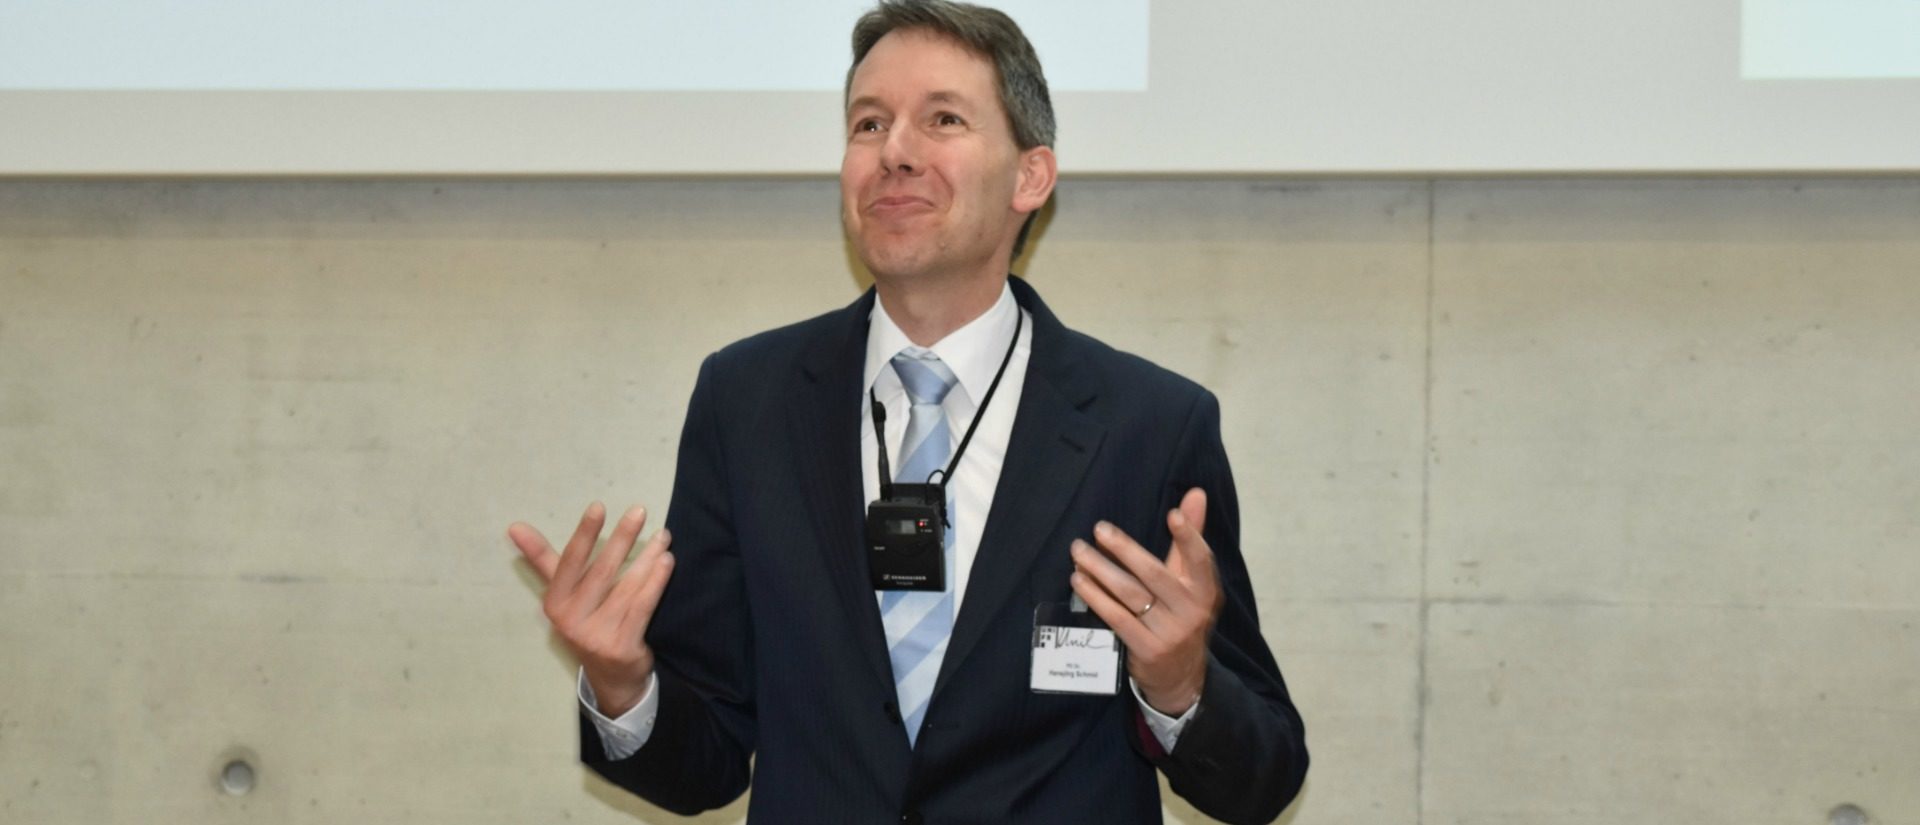 Hansjörg Schmid, directeur exécutif du Centre Suisse Islam et Société (CSIS) de l'Université de Fribourg  | © Jacques Berset 